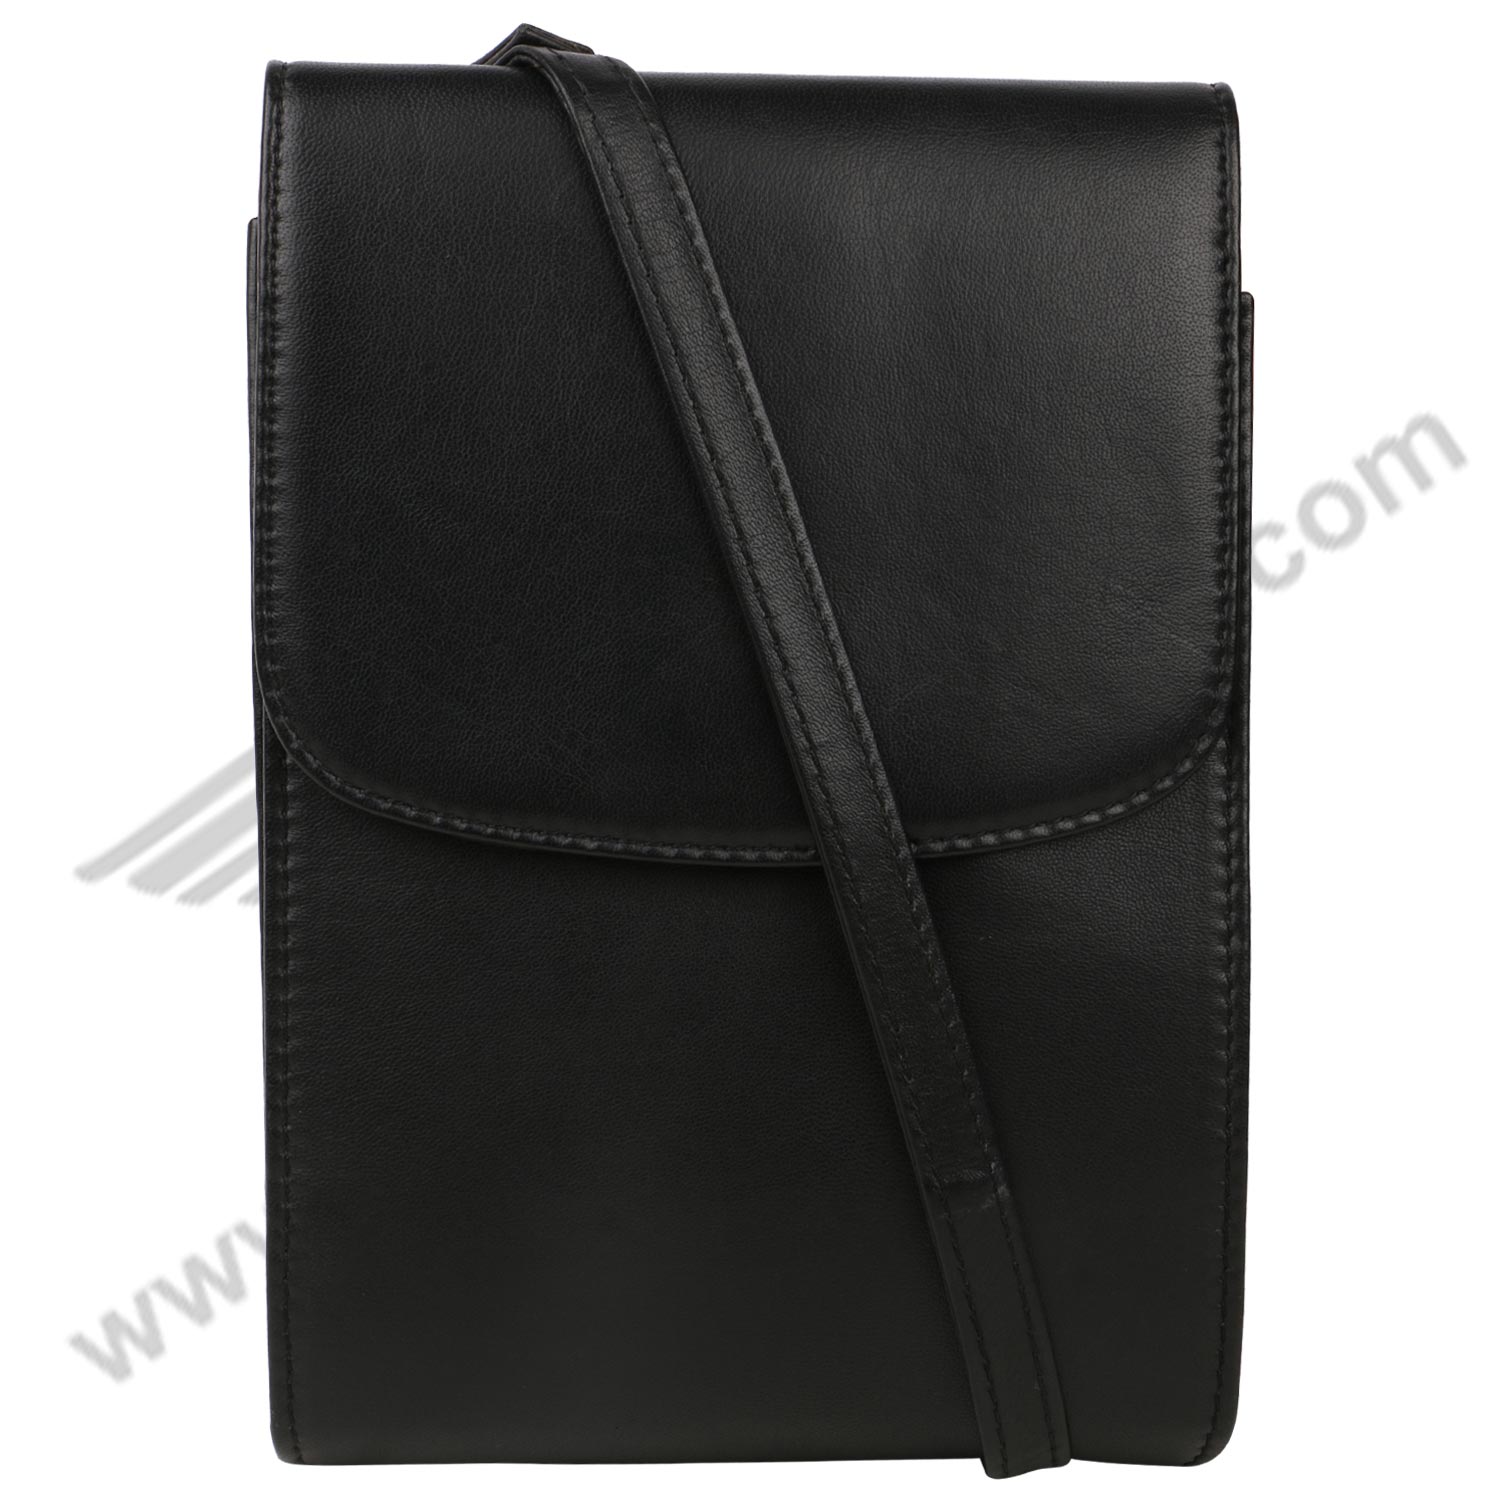 Front image of Black MULTI POCKET CROSS BODY HAND BAG or sling bag